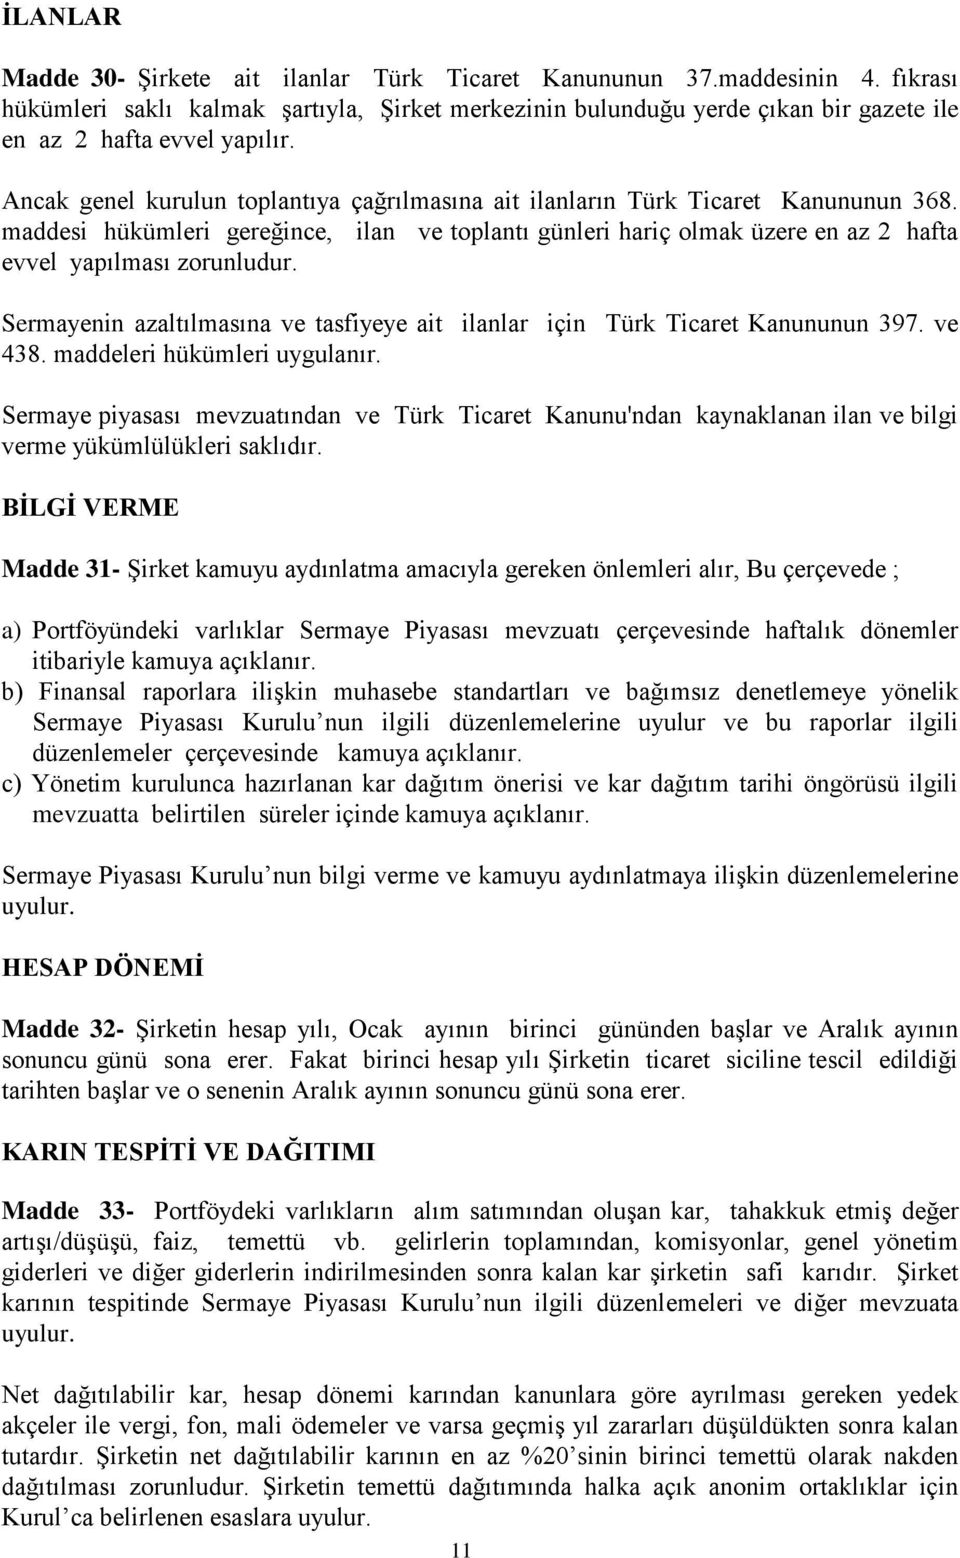 Ancak genel kurulun toplantıya çağrılmasına ait ilanların Türk Ticaret Kanununun 368. maddesi hükümleri gereğince, ilan ve toplantı günleri hariç olmak üzere en az 2 hafta evvel yapılması zorunludur.